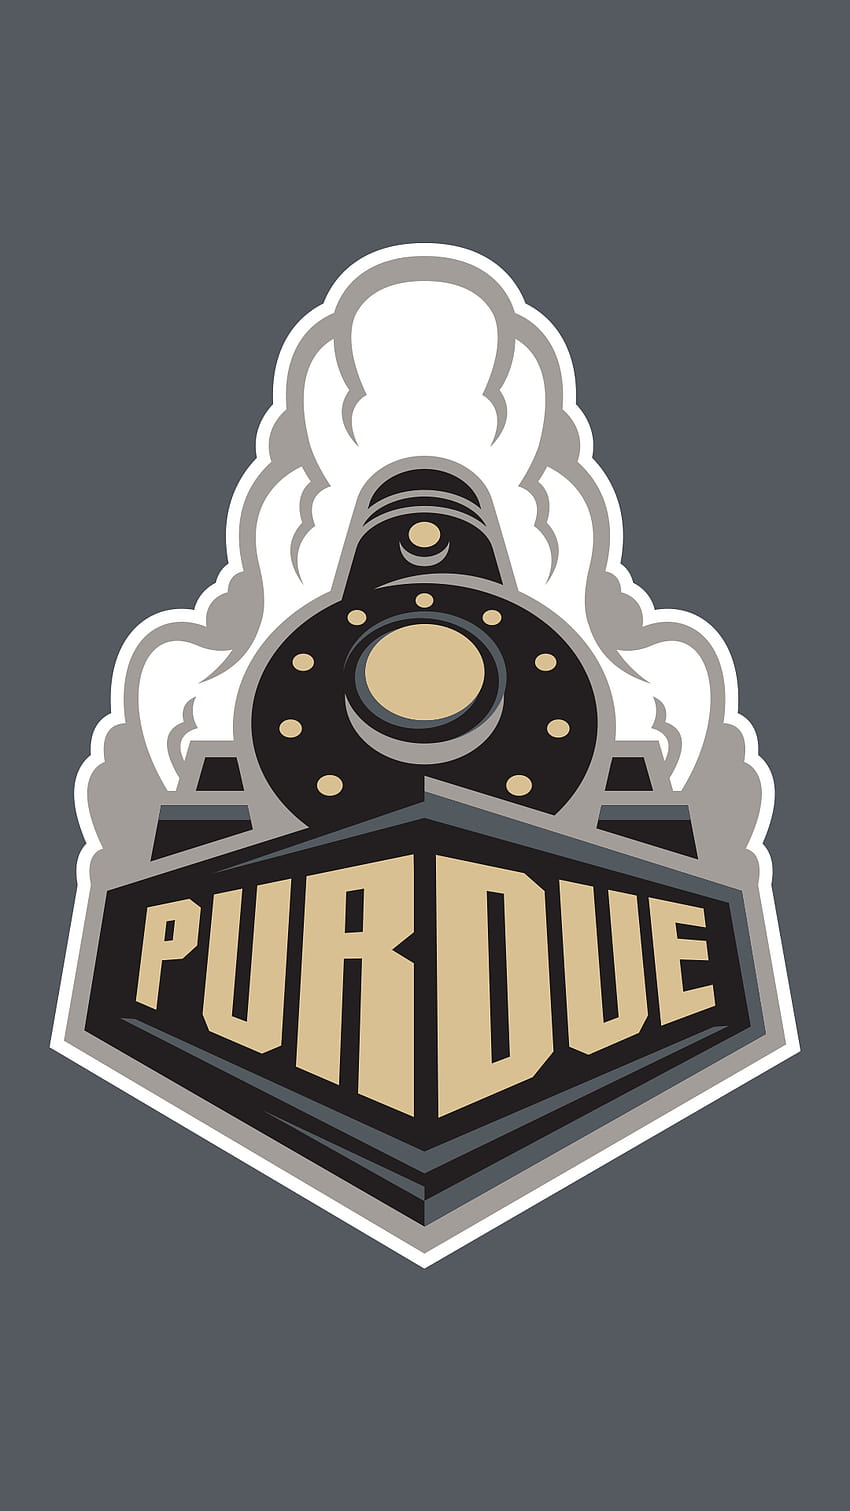 Download Purdue University In Dark Graphic Word Background Wallpaper   Wallpaperscom